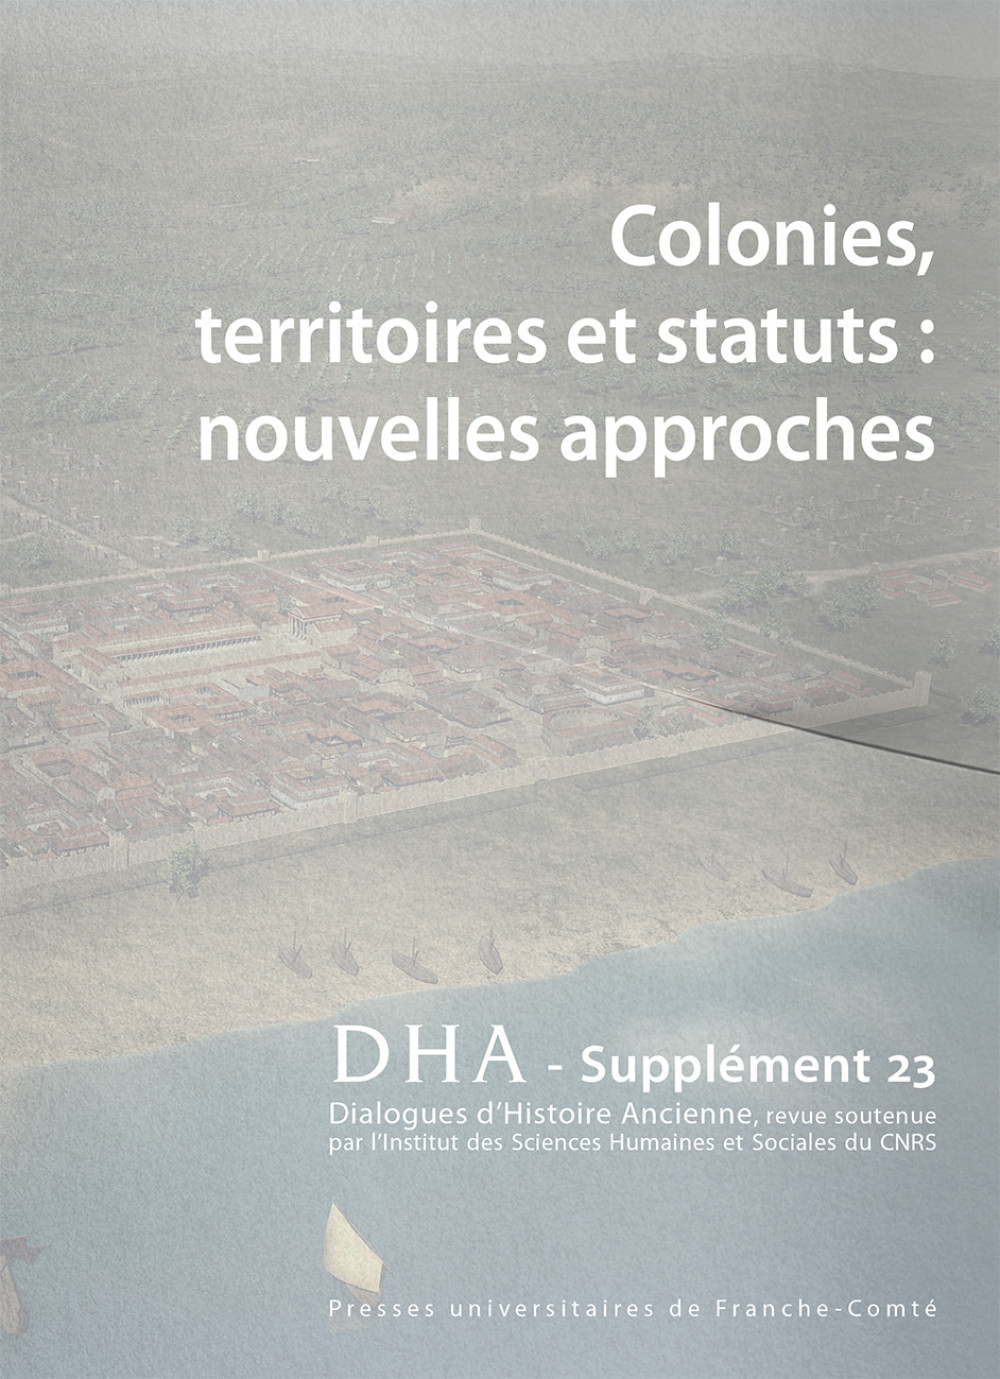 couverture du Dialogues d'histoire ancienne, supplément 23 : Colonies, territoires et statuts : nouvelles approches